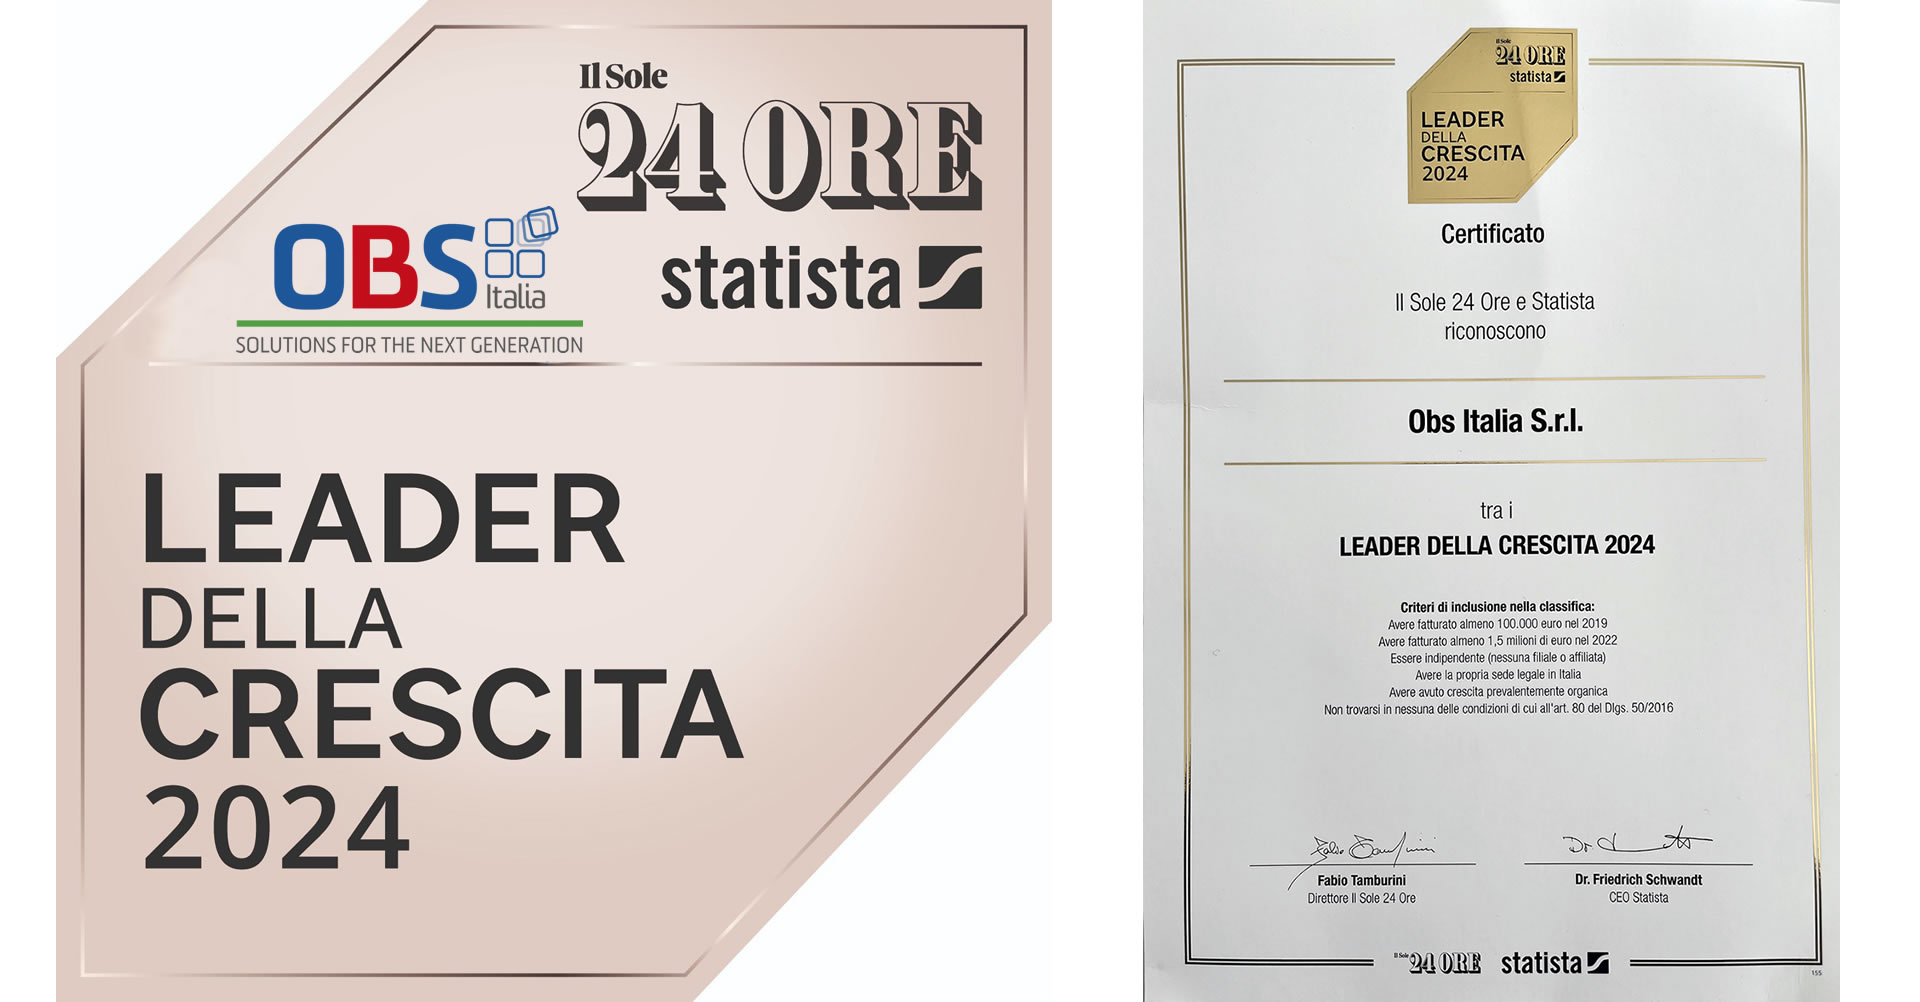 Sole24ore - OBS Italia attestato Leader crescita 2024